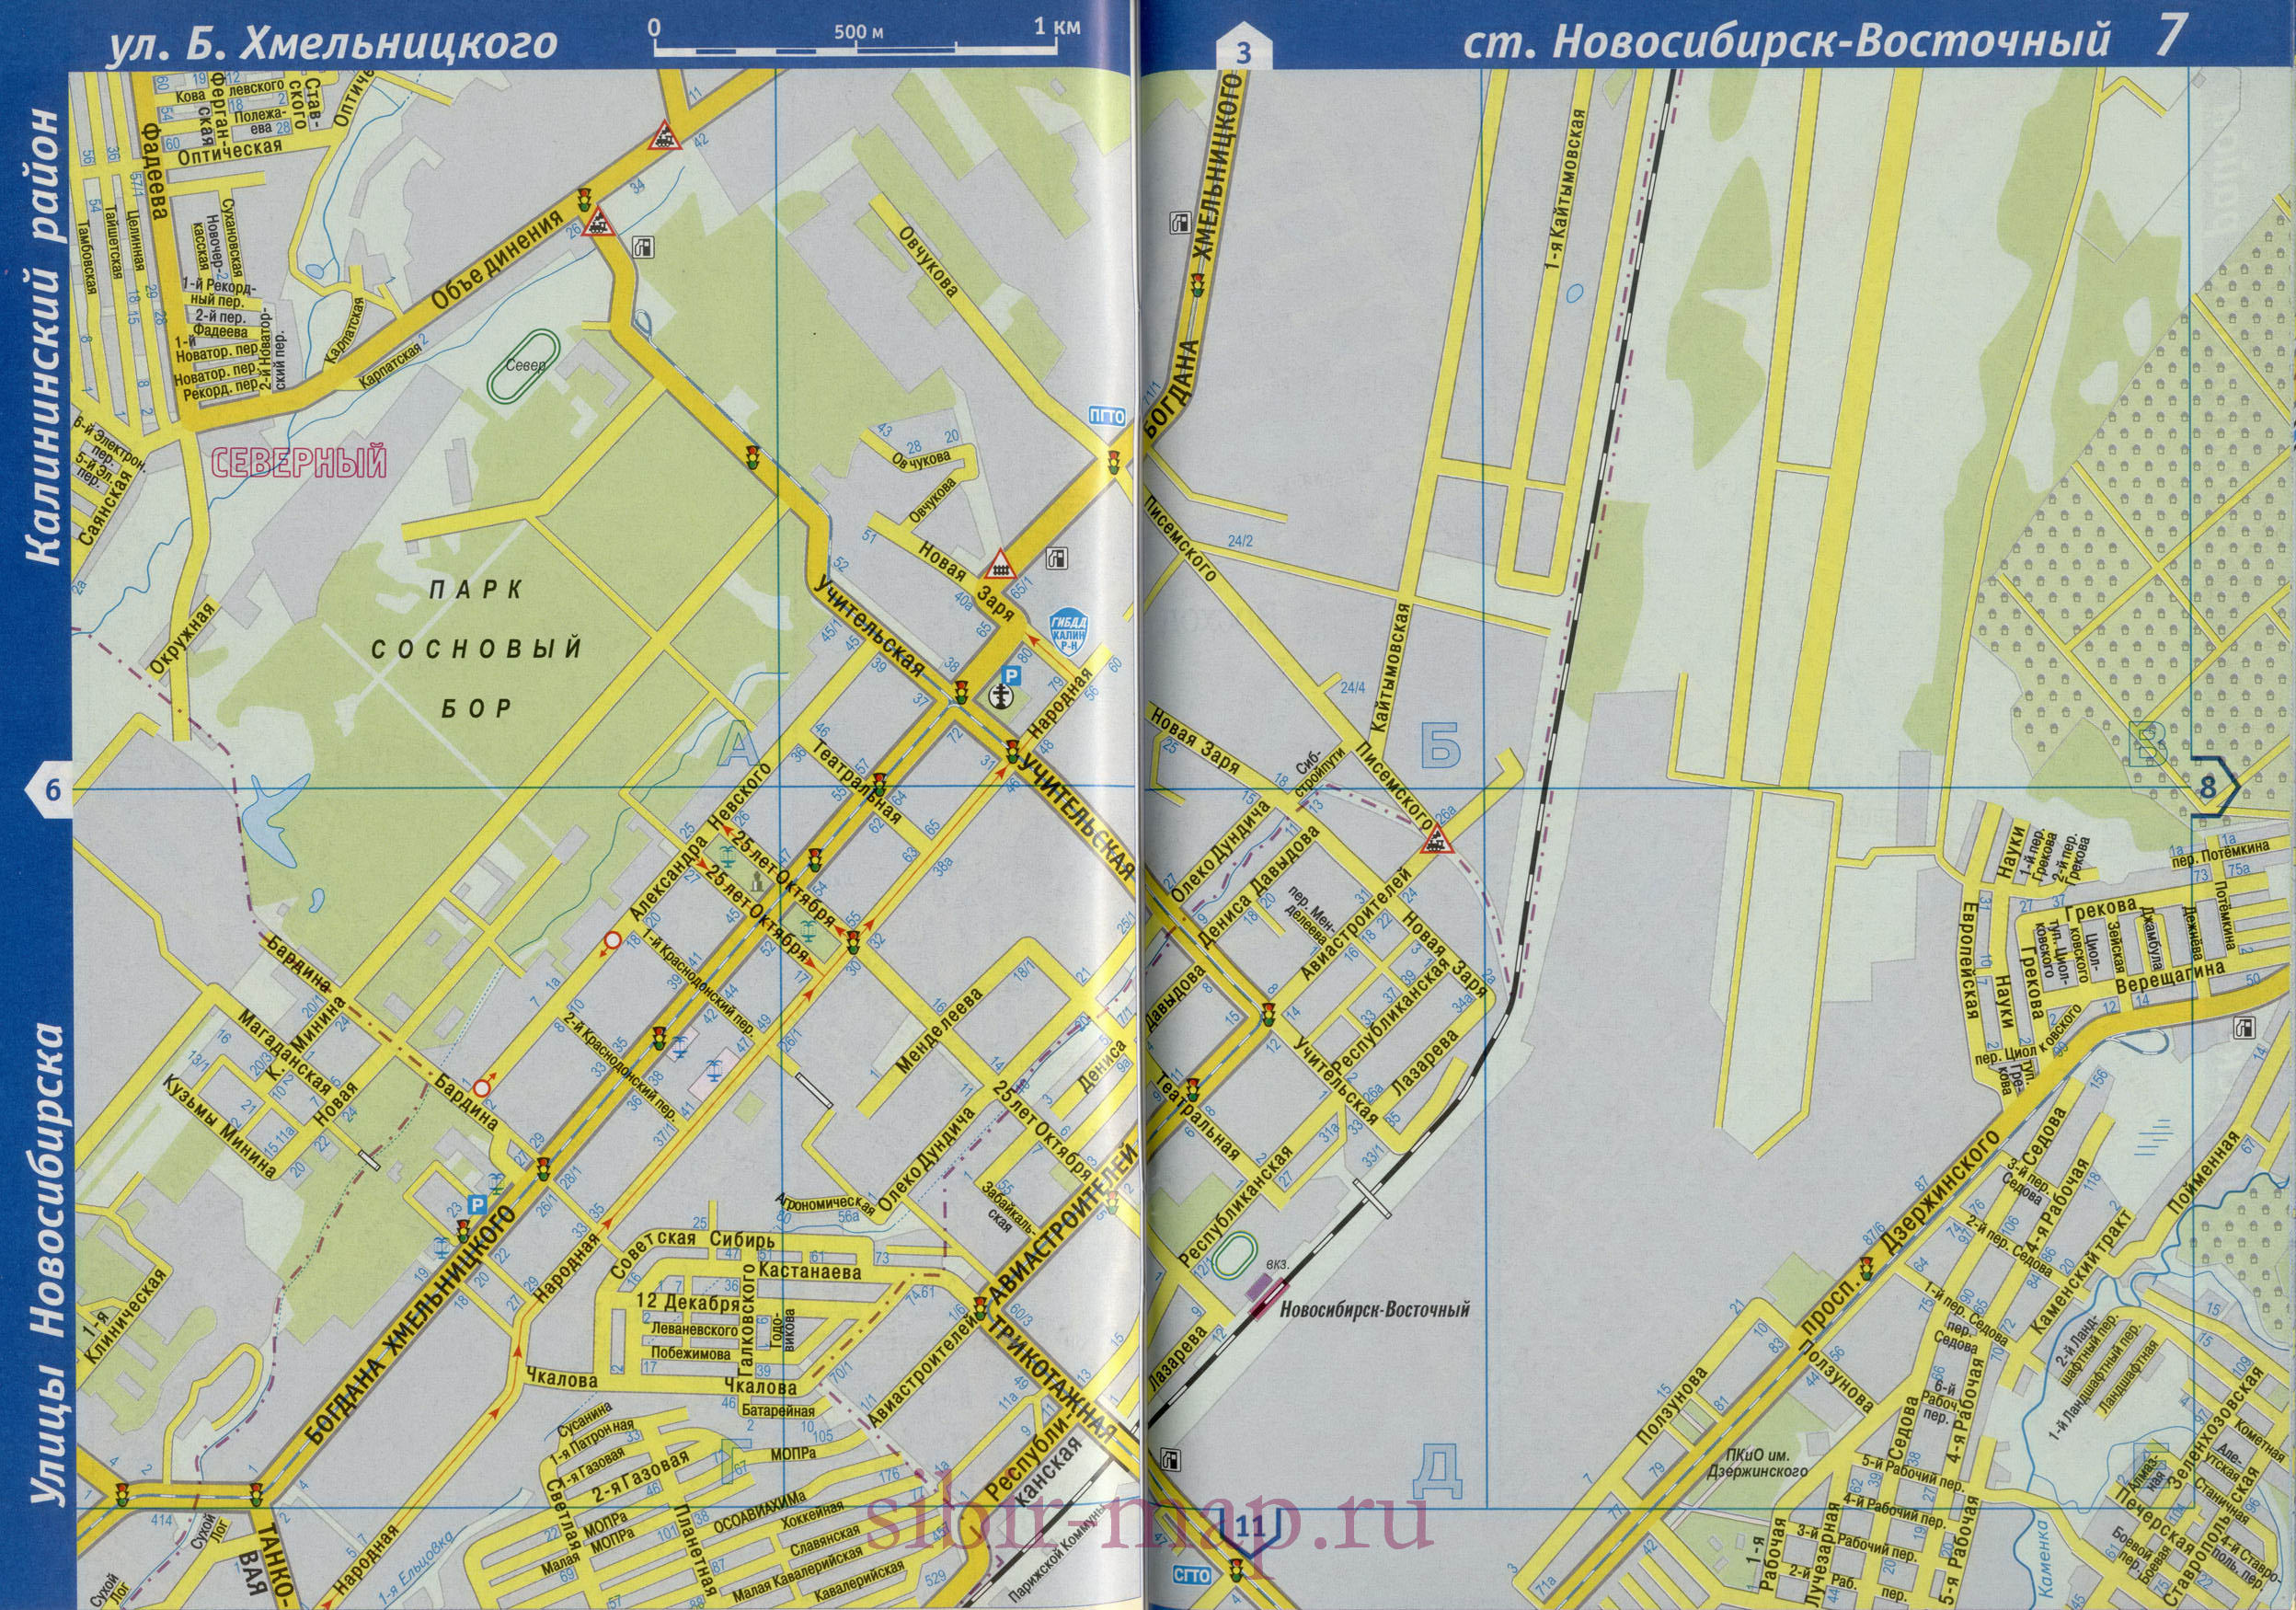 Калининский район Новосибирска. Детальная карта Калининского района с названиями улиц, A1 - 